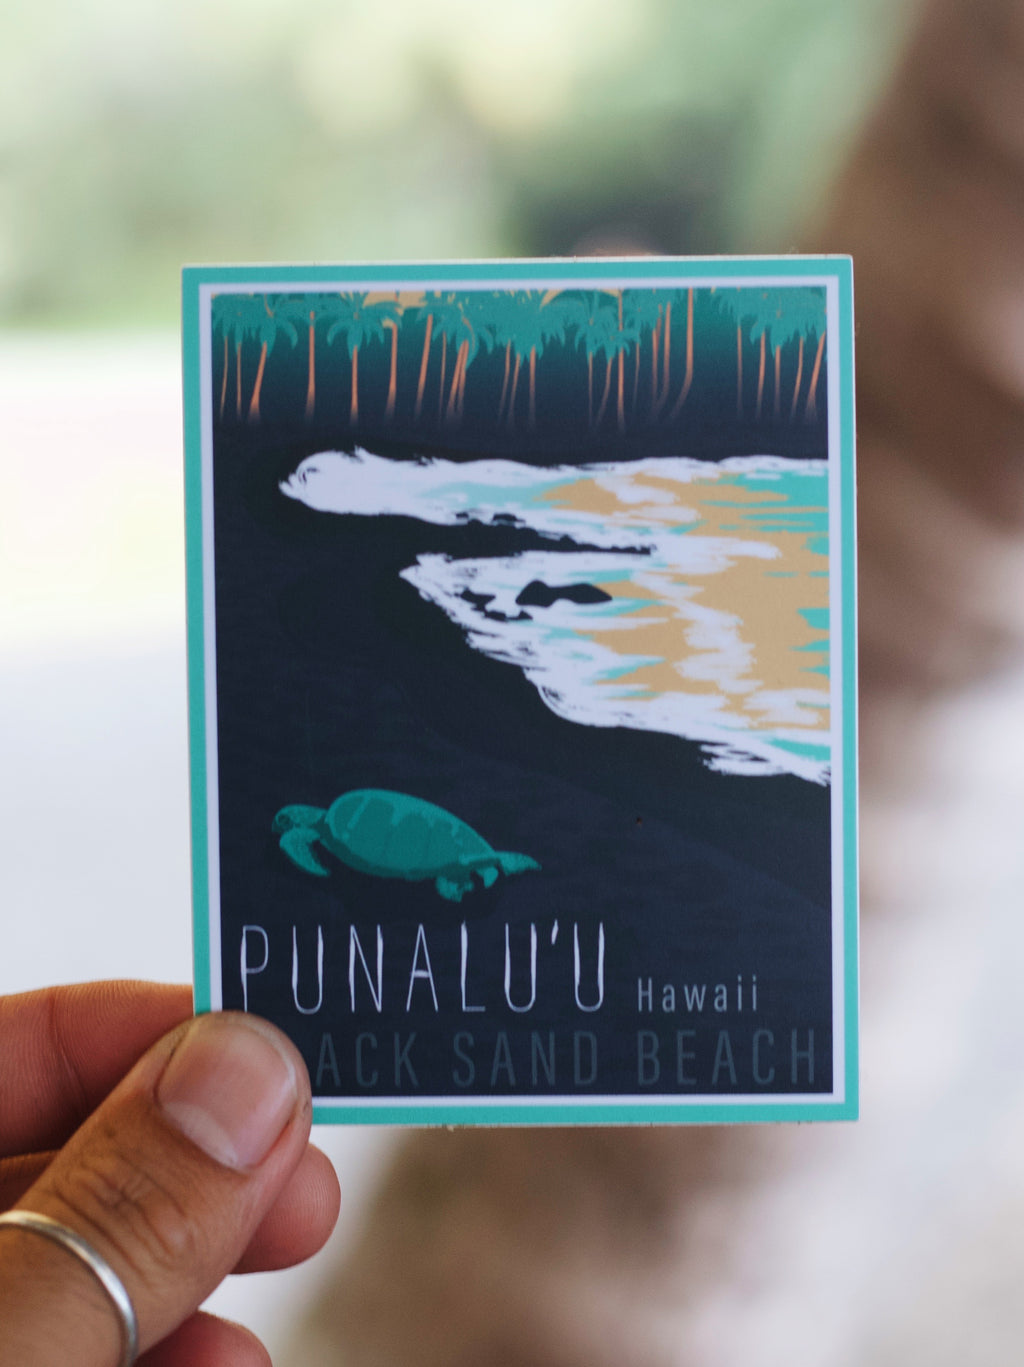 5 Inch Retro Punalu'u Beach Sticker